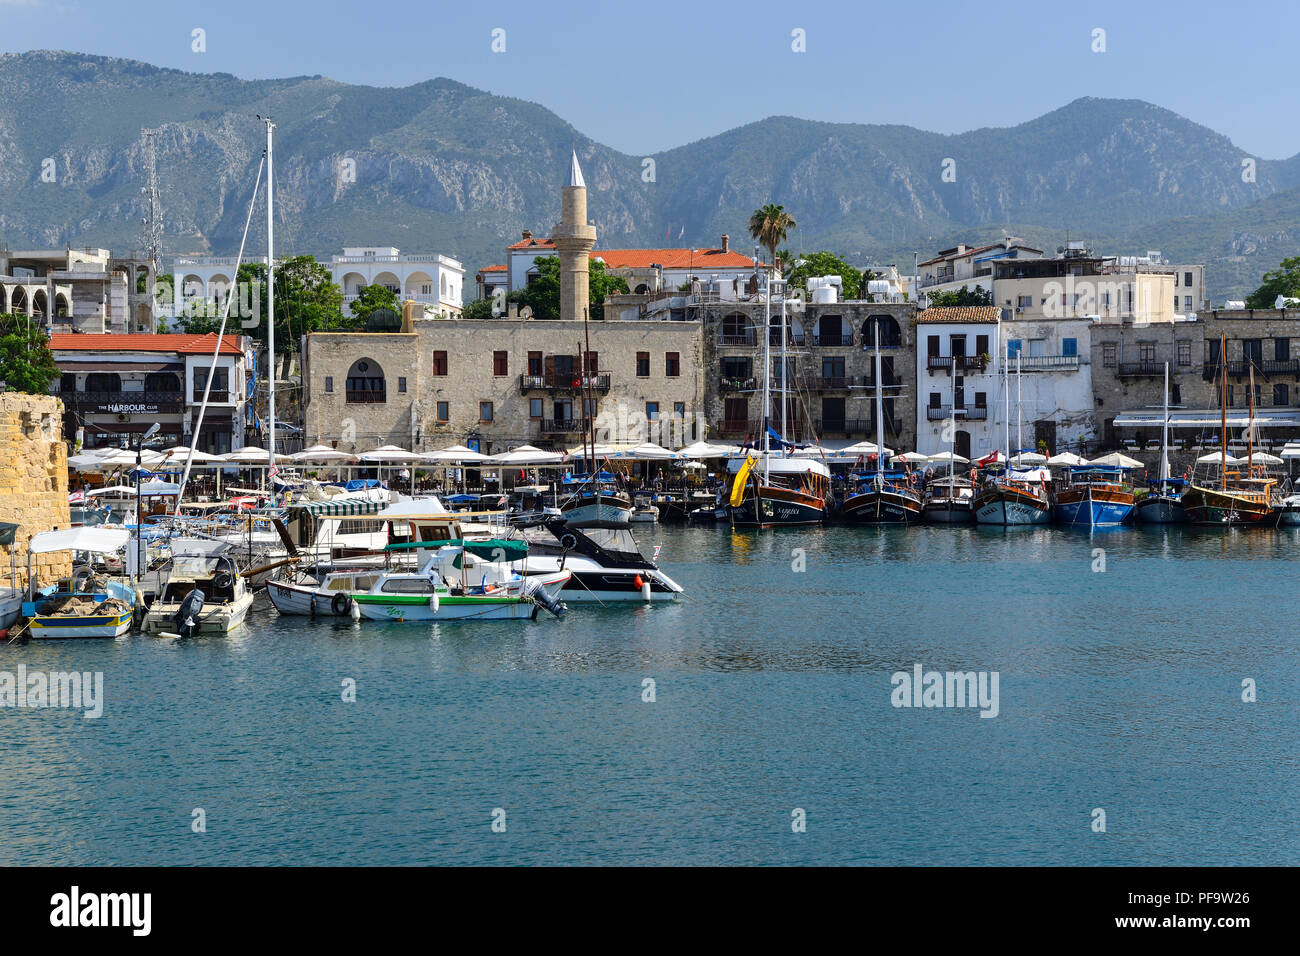 Touristische boote in Paphos Hafen, Kyrenia (Girne), Türkische Republik Nordzypern Stockfoto